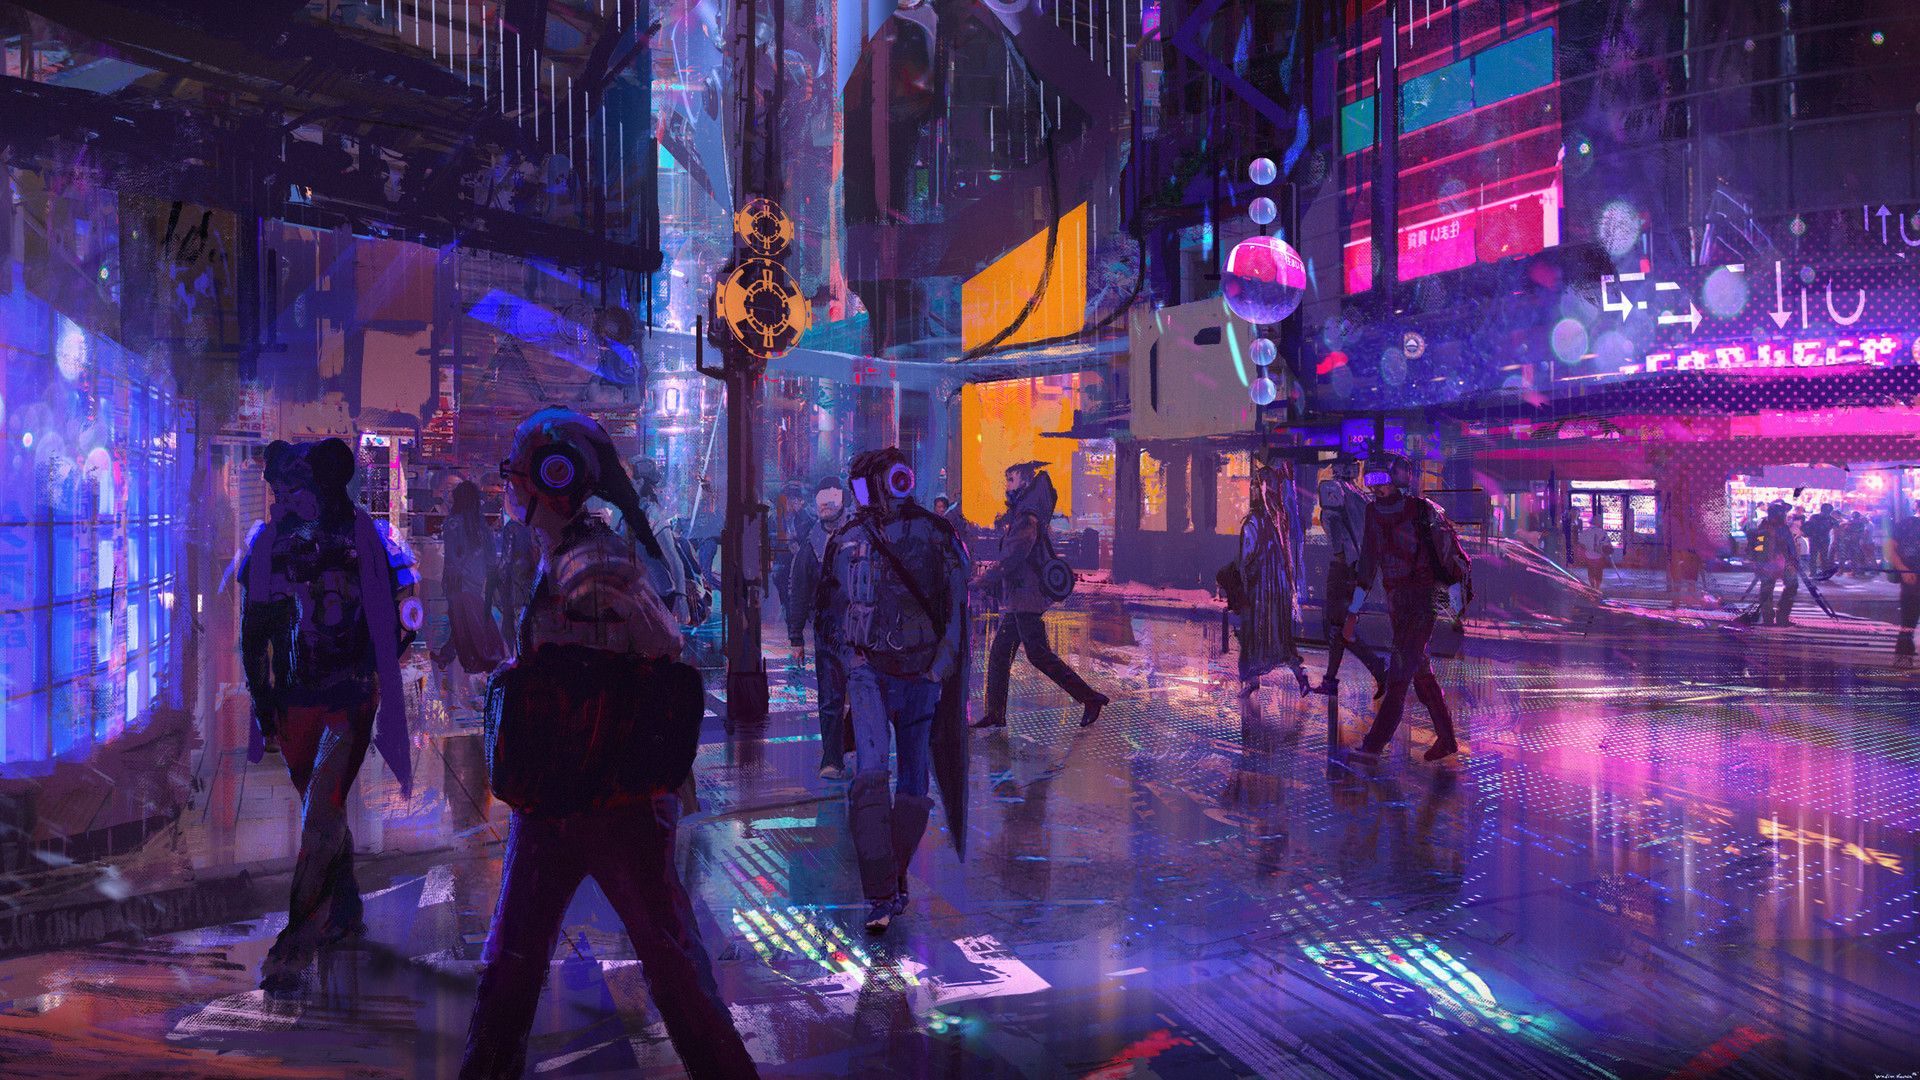 cyberpunk #city #1080P #wallpaper #hdwallpaper #desktop